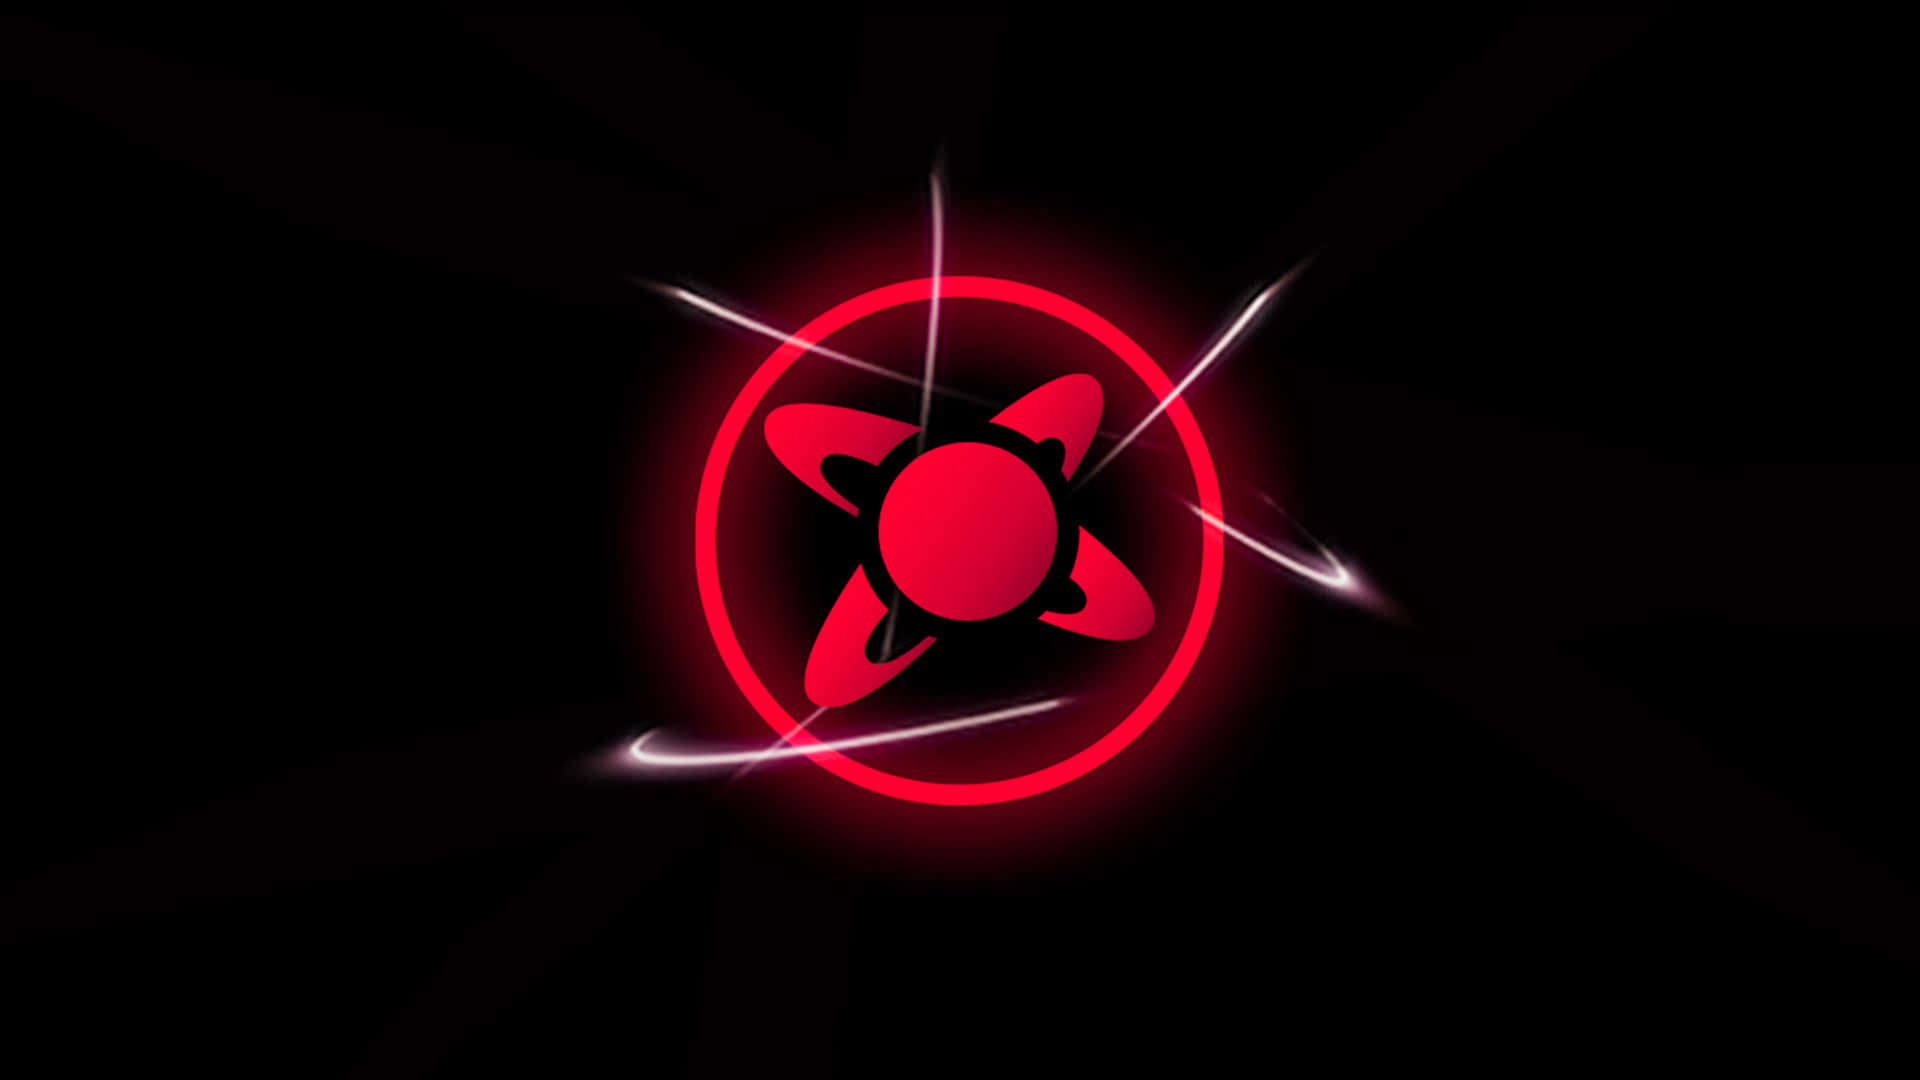 Einrotes Und Schwarzes Logo Mit Einem Roten Stern. Wallpaper